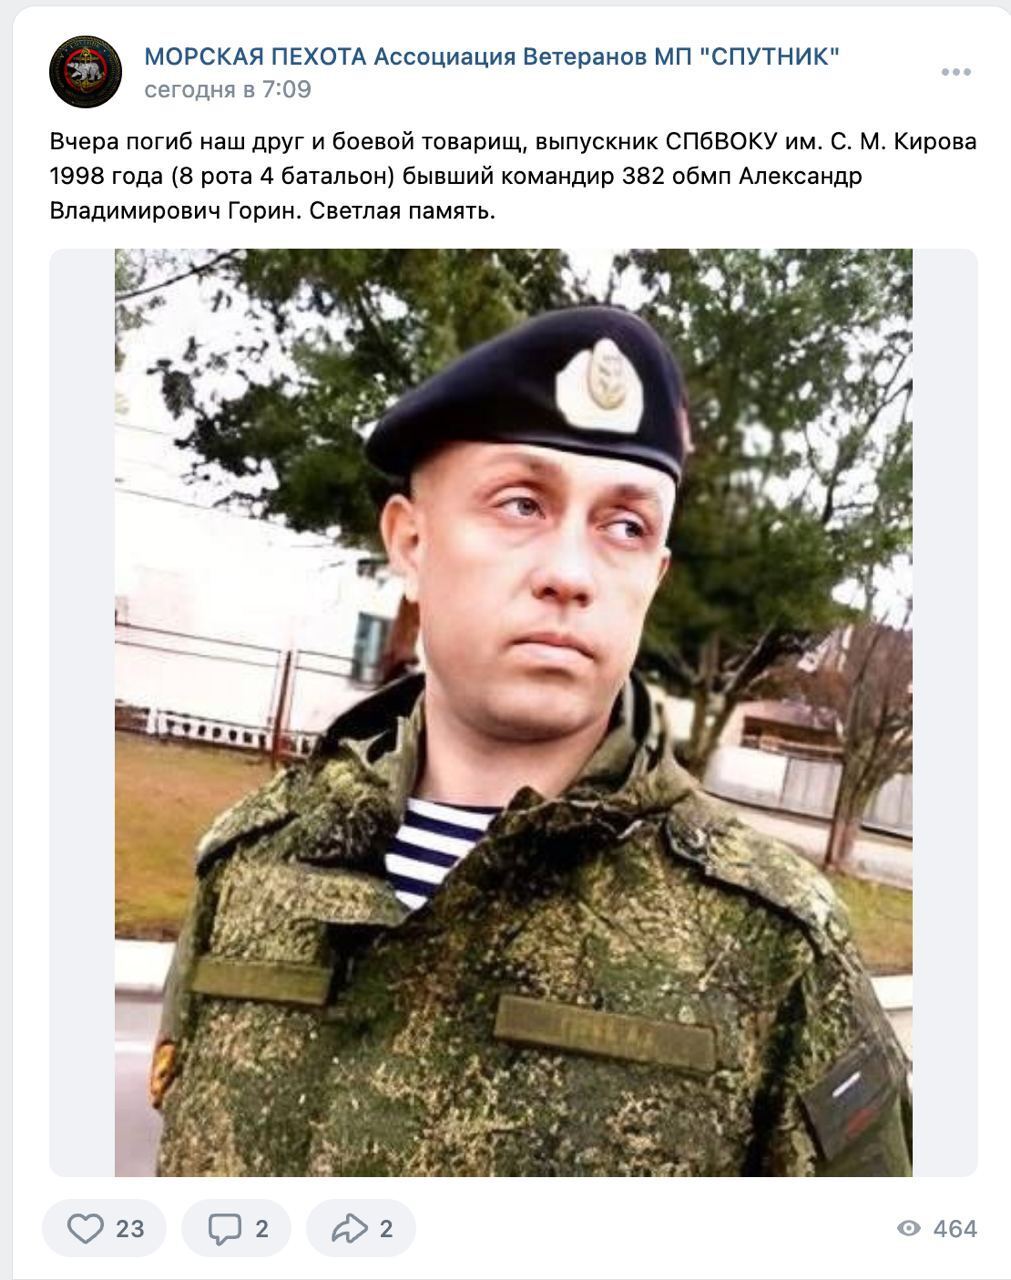 Мінус ще один комбат: ЗСУ ліквідували "зеленого чоловічка", який у 2014 році захоплював Крим. Фото